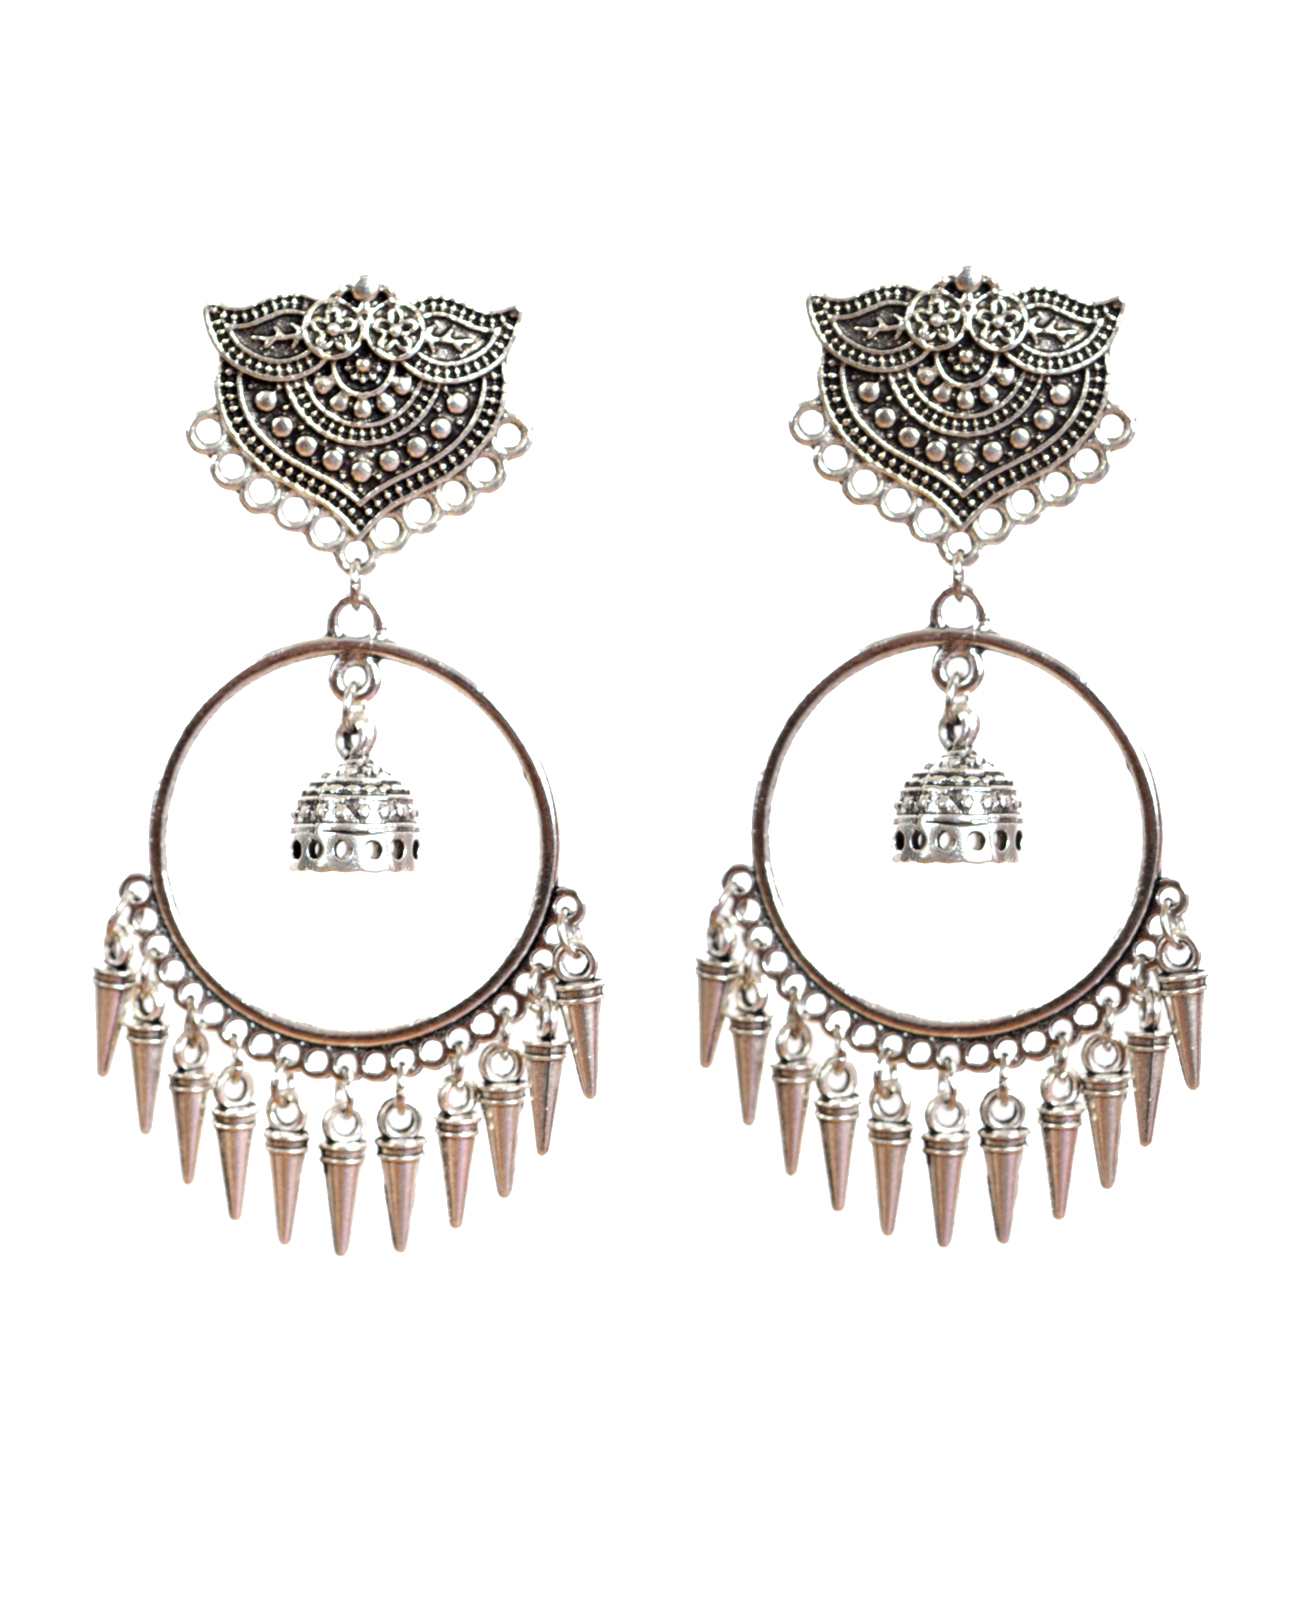 Beaded Oxidised Silver Fashion Earrings For Women Girls Nisuj